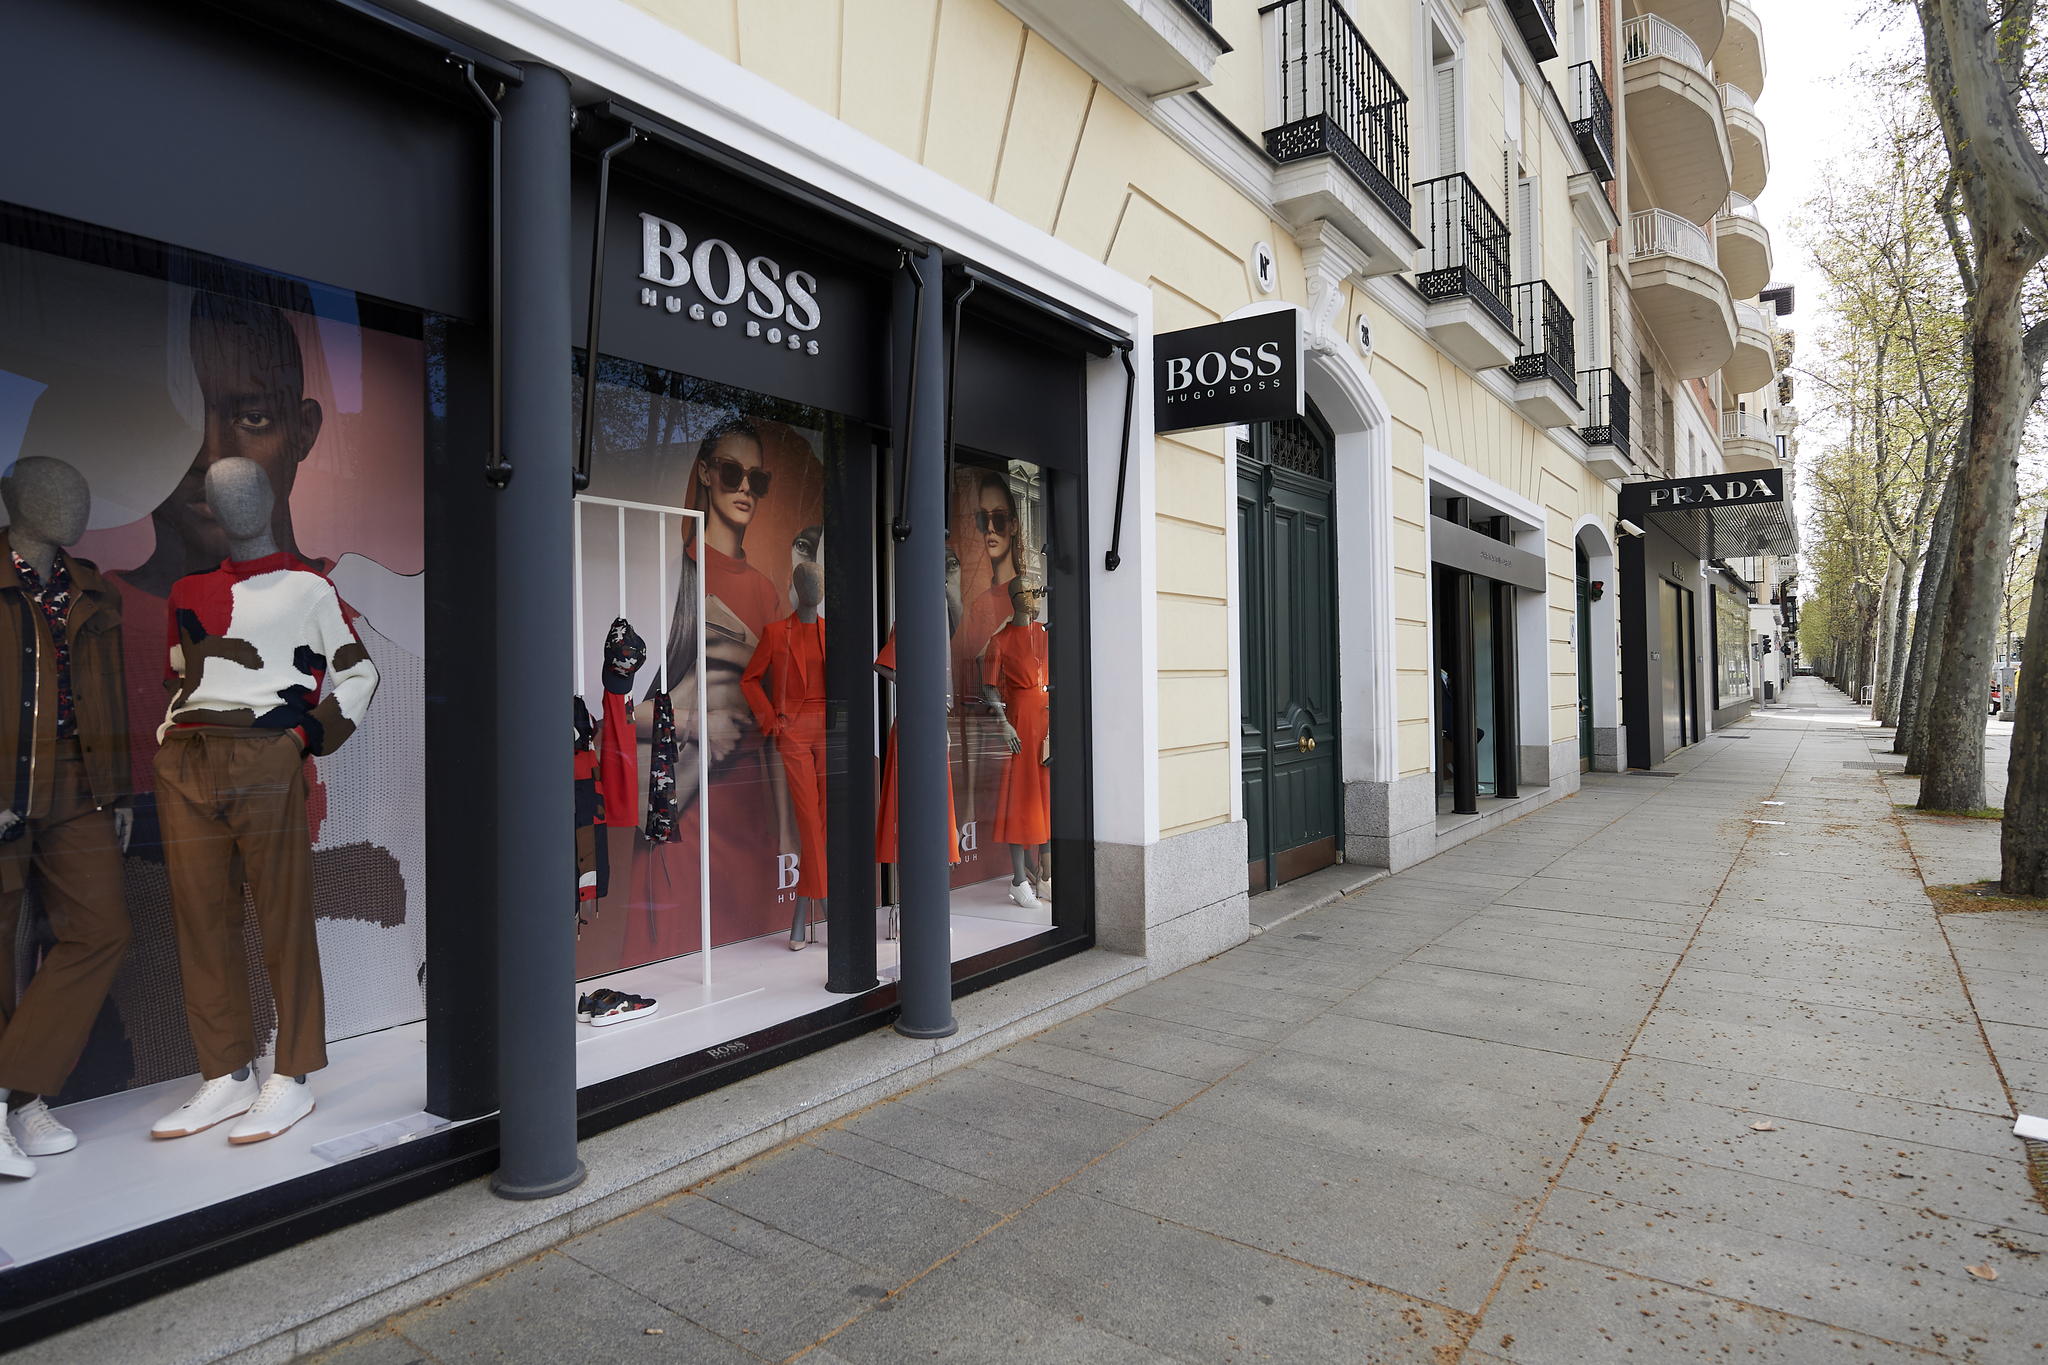 Tienda de Hugo Boss, una de las direcciones de shopping de la reina Letizia.